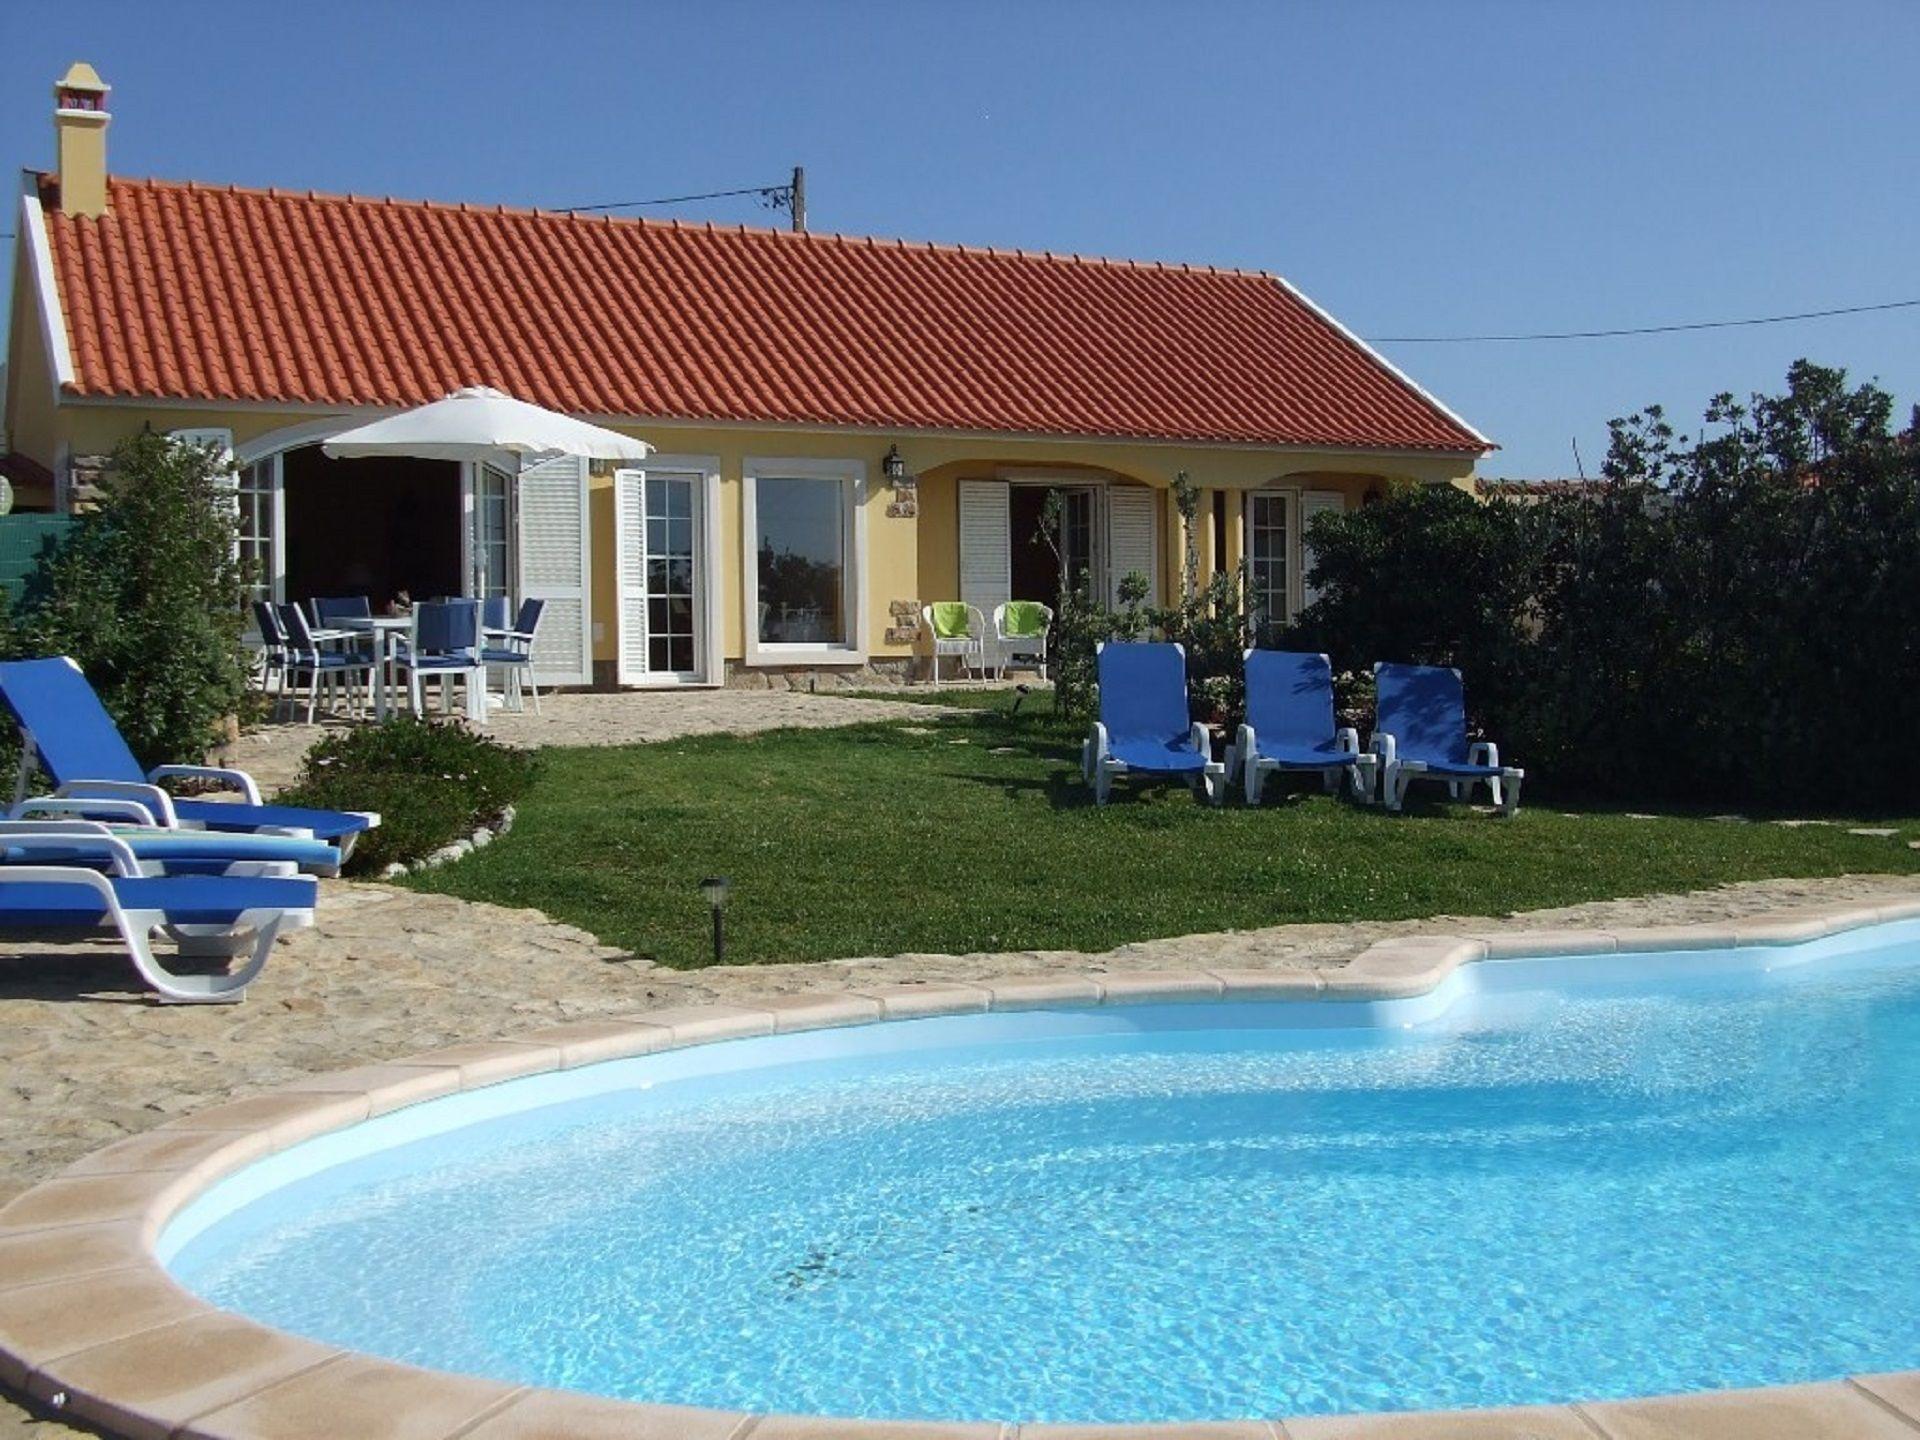 Ferienhaus mit Privatpool für 6 Personen ca.  Ferienhaus in Portugal